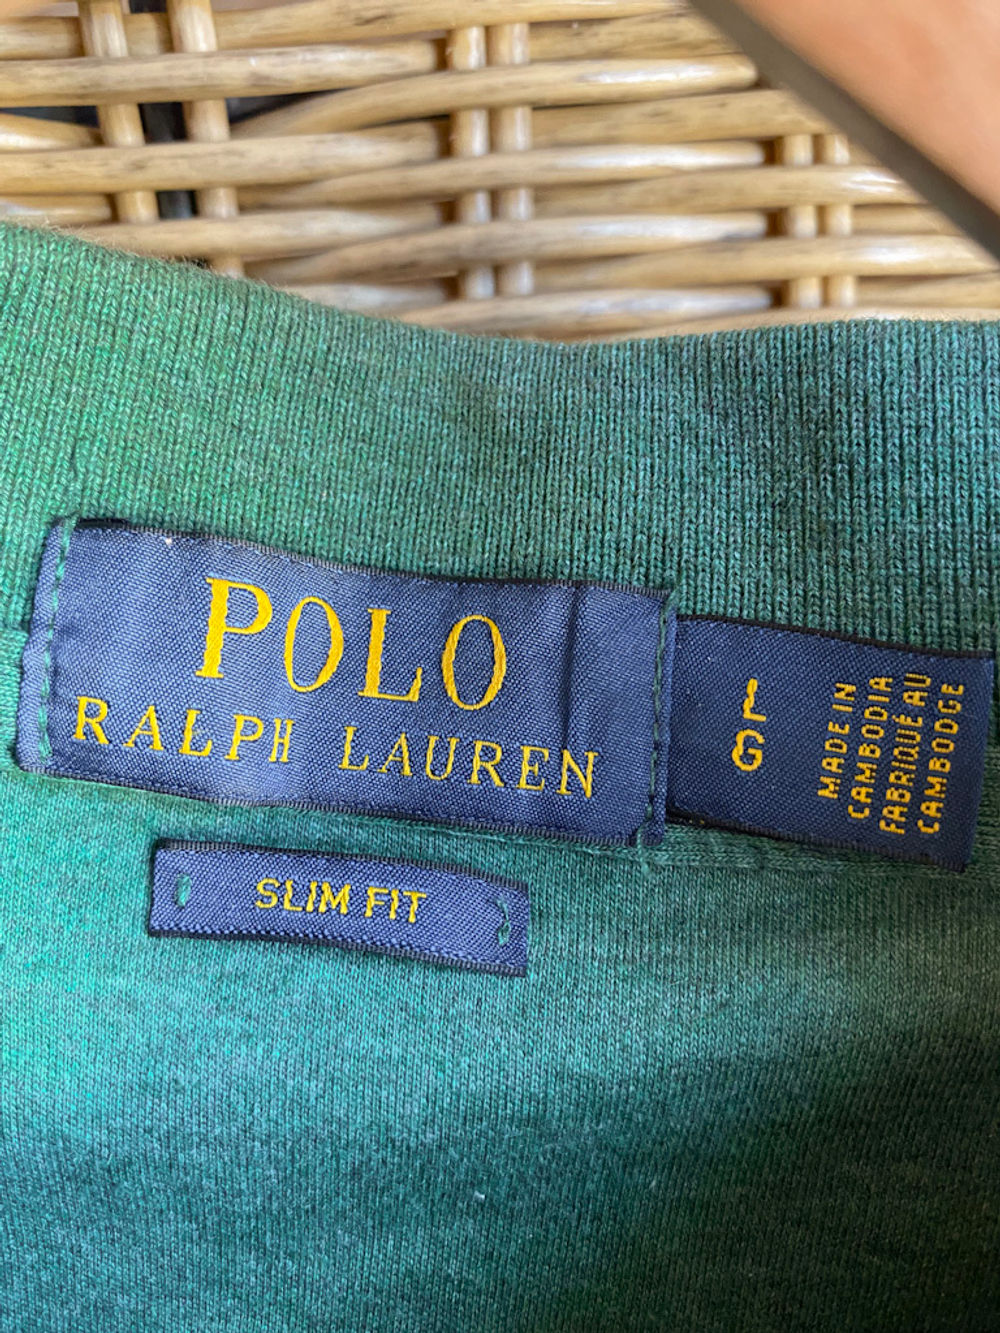 Поло Polo Ralph Lauren